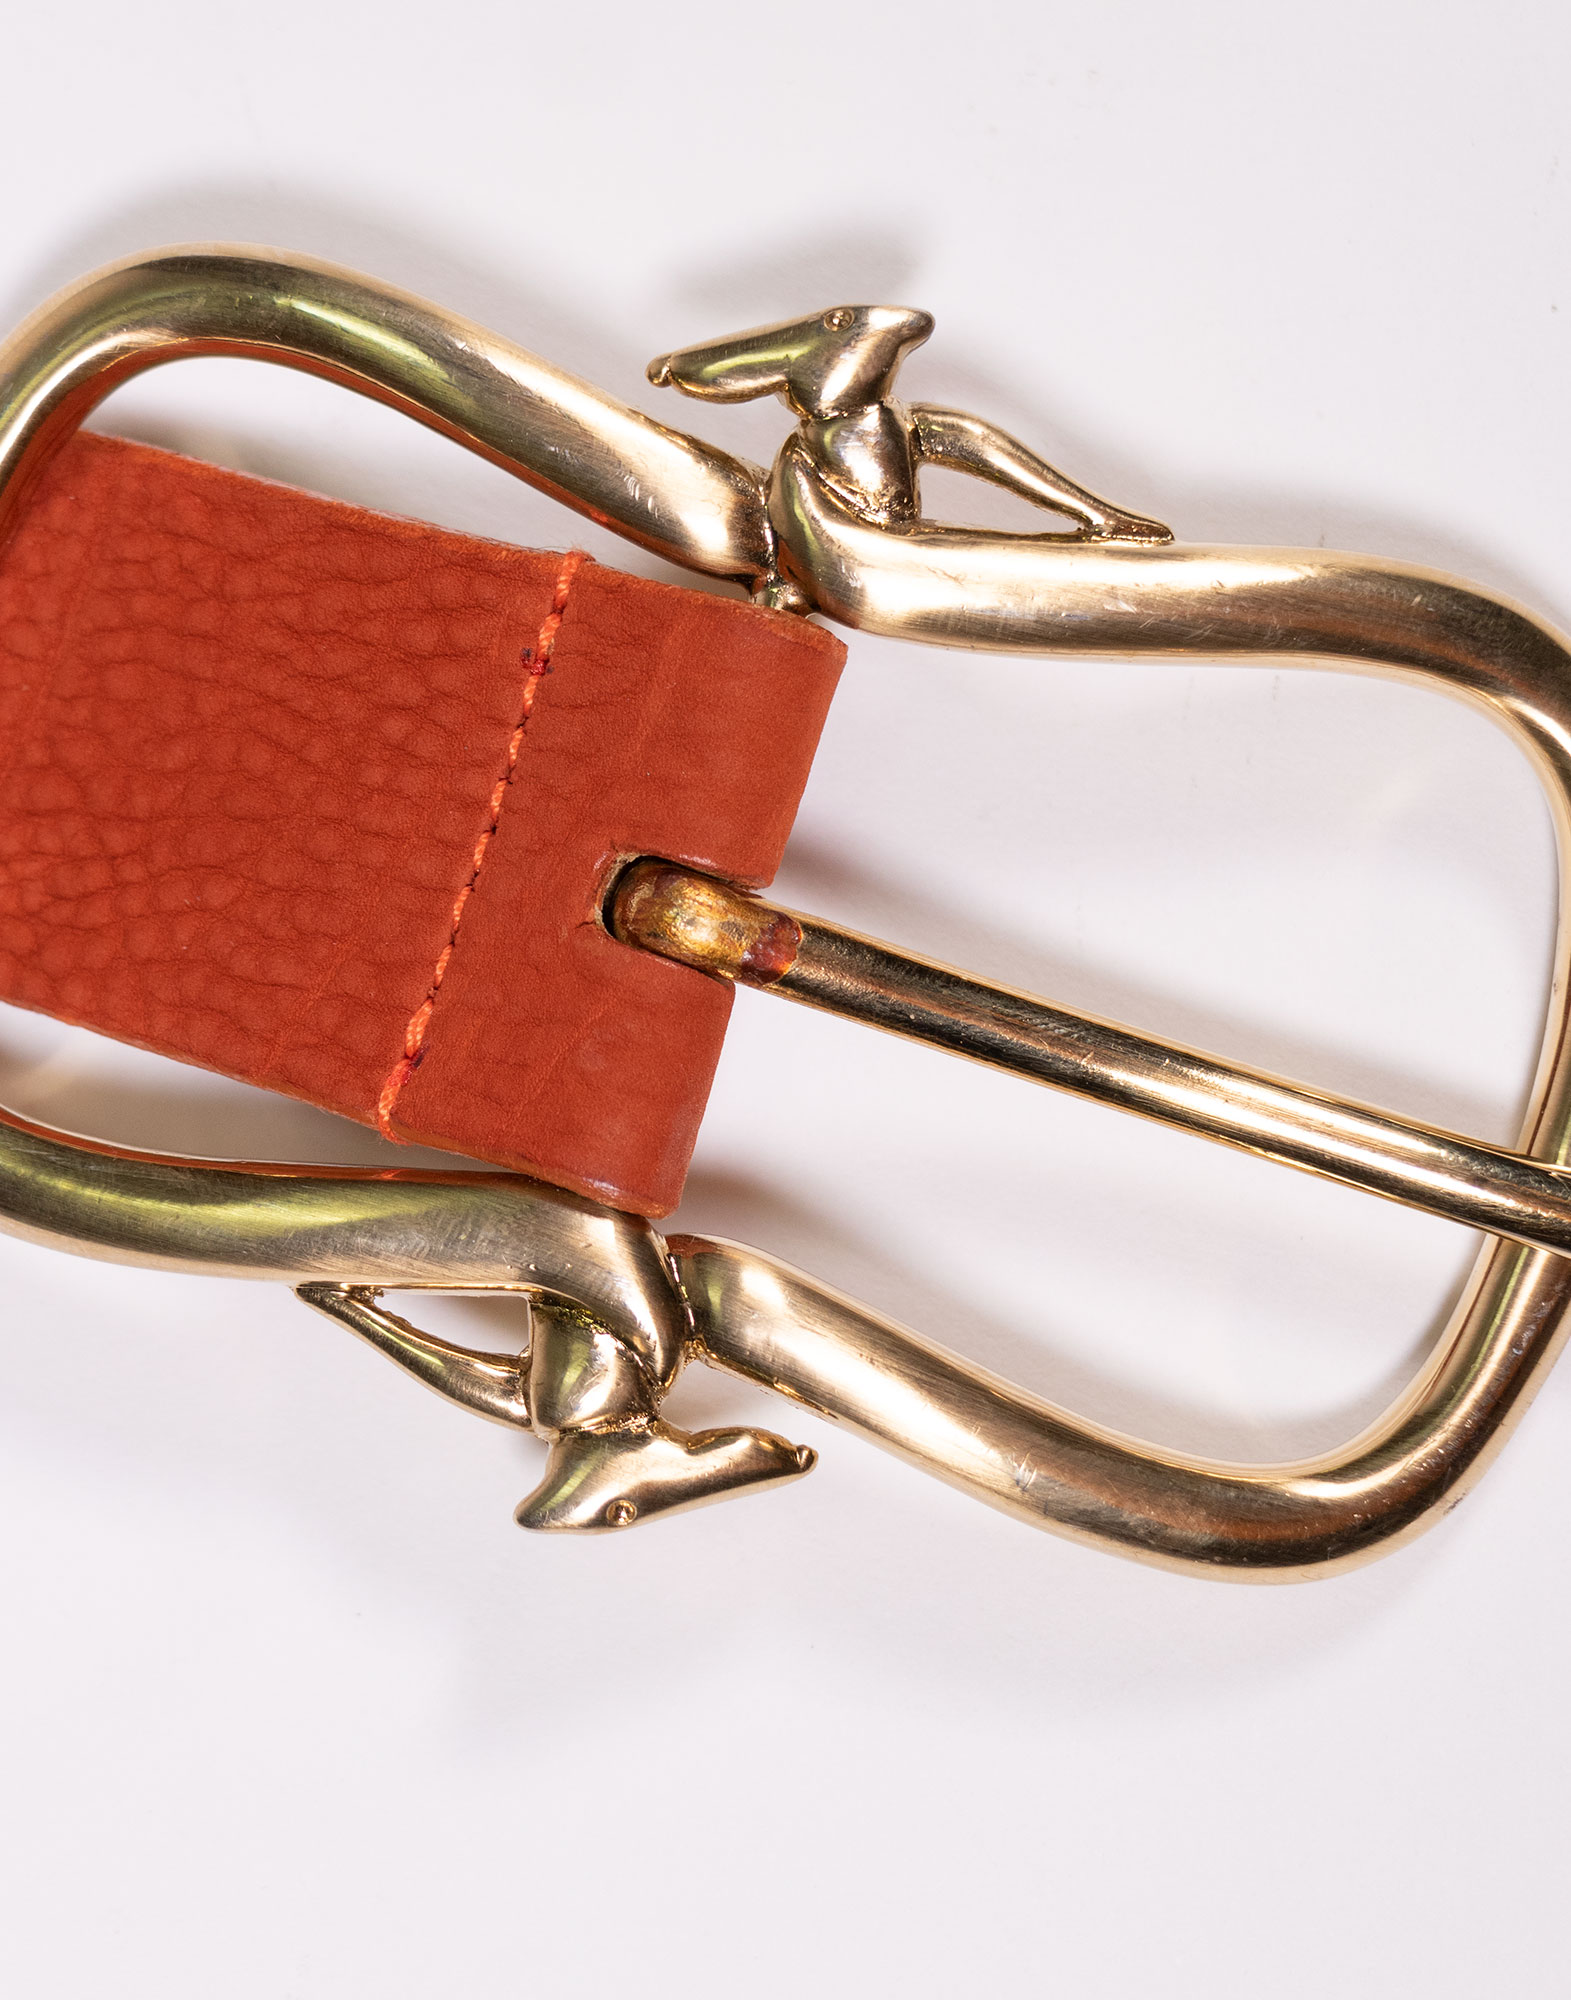 Trussardi - 80s leather belt